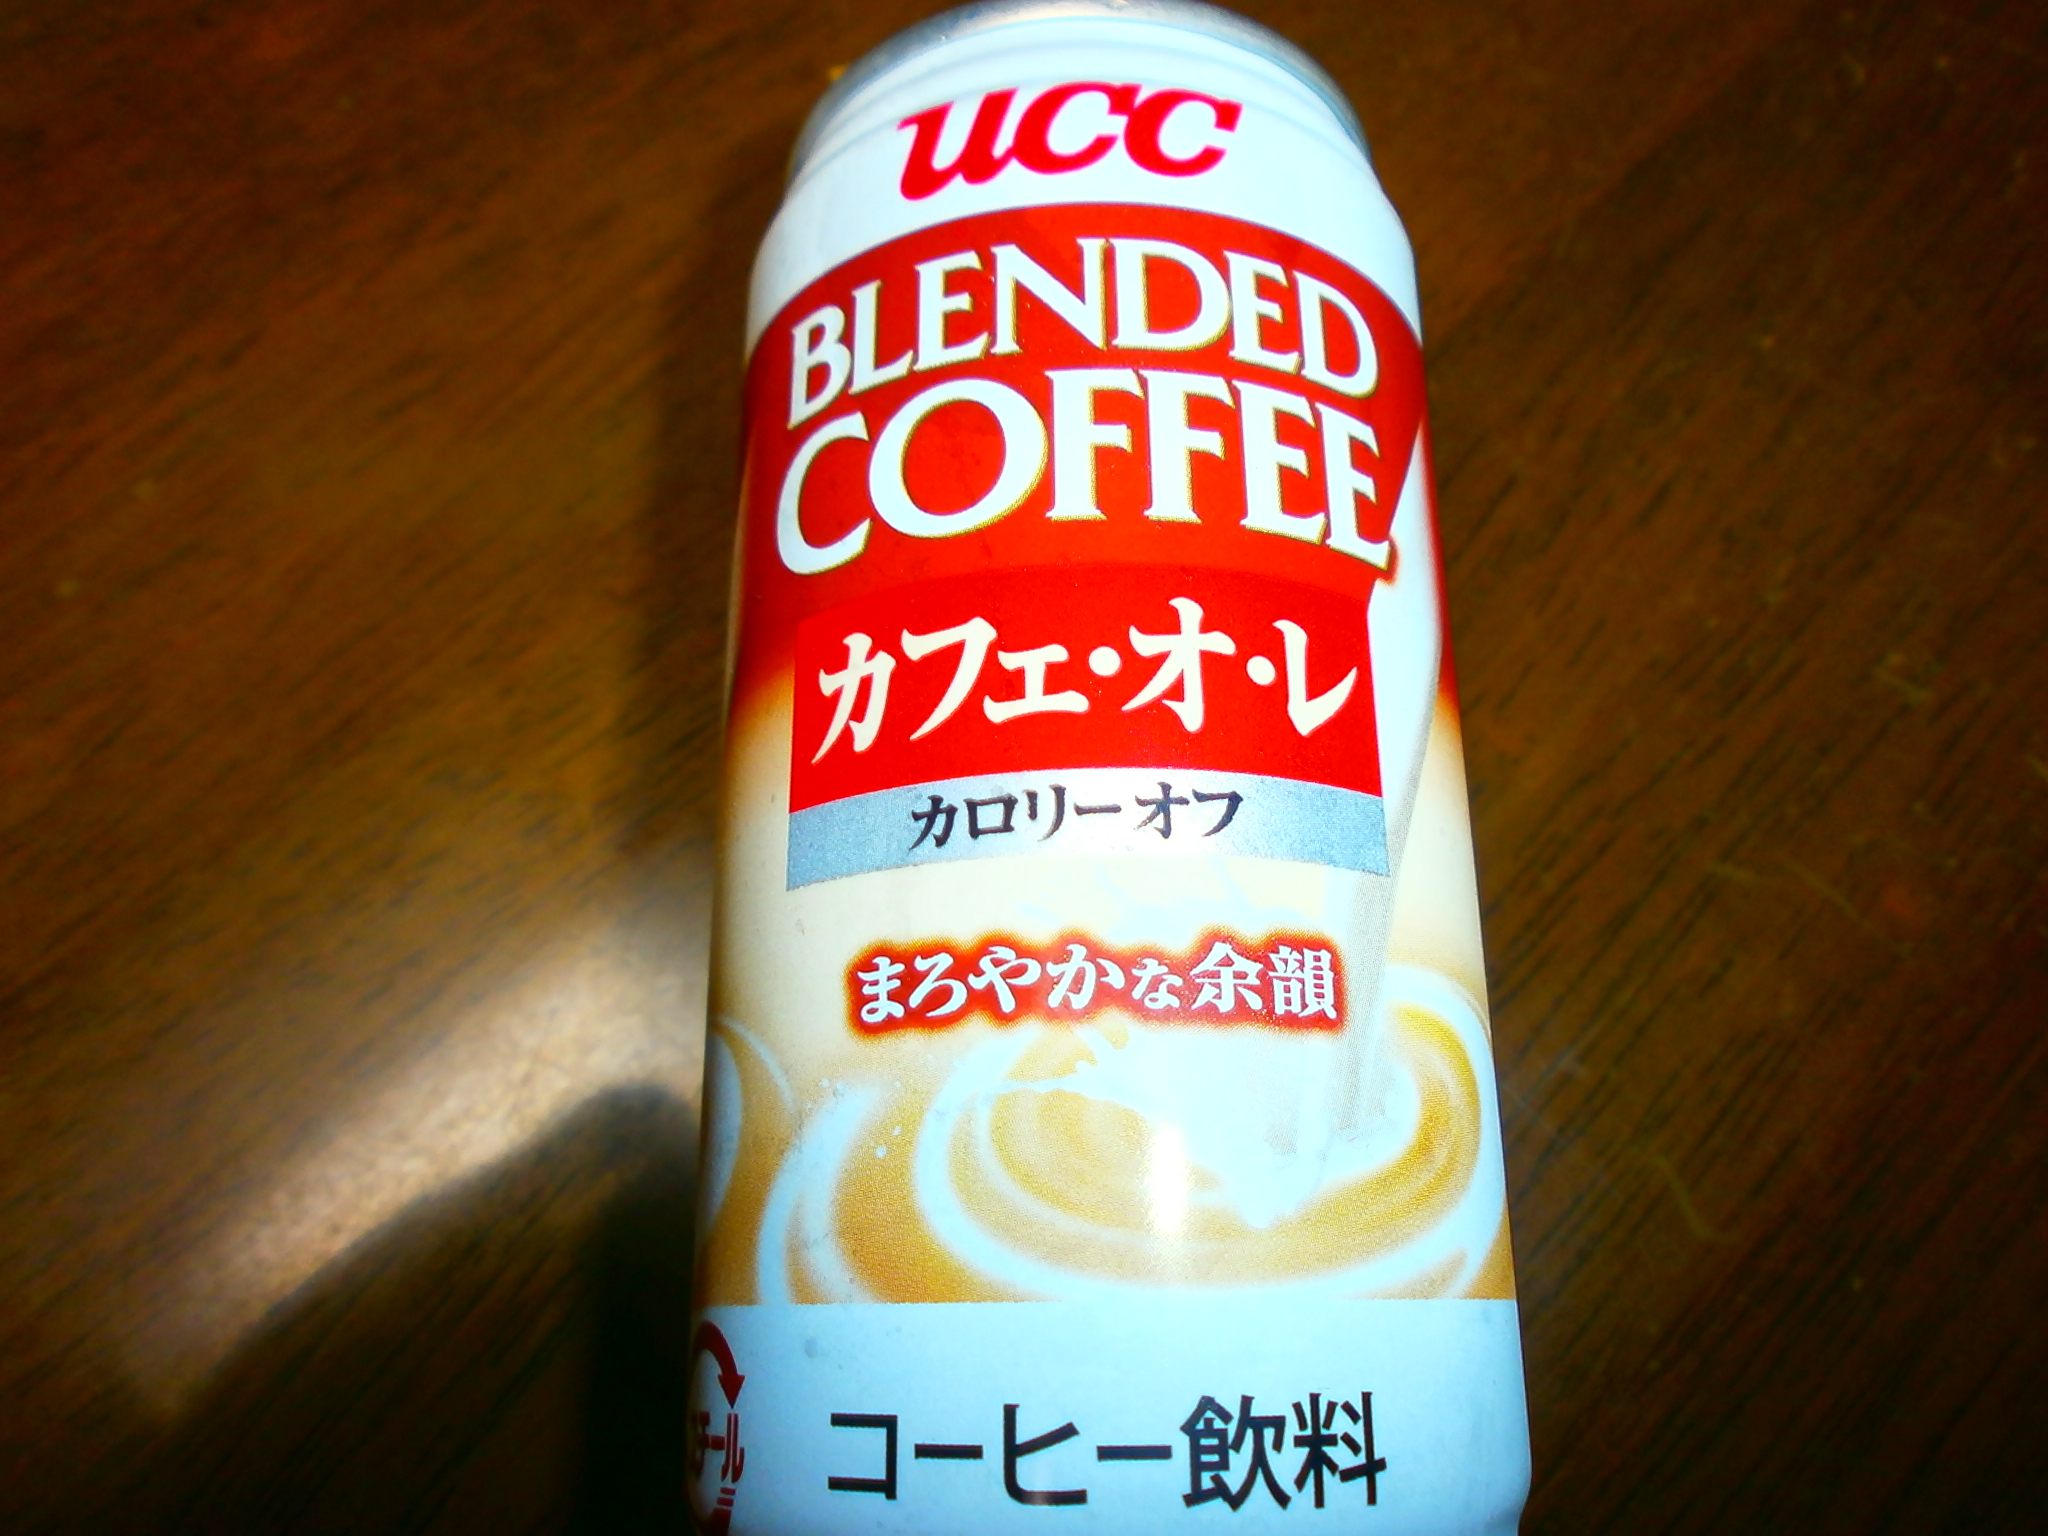 Café au lait calorie off (UCC)